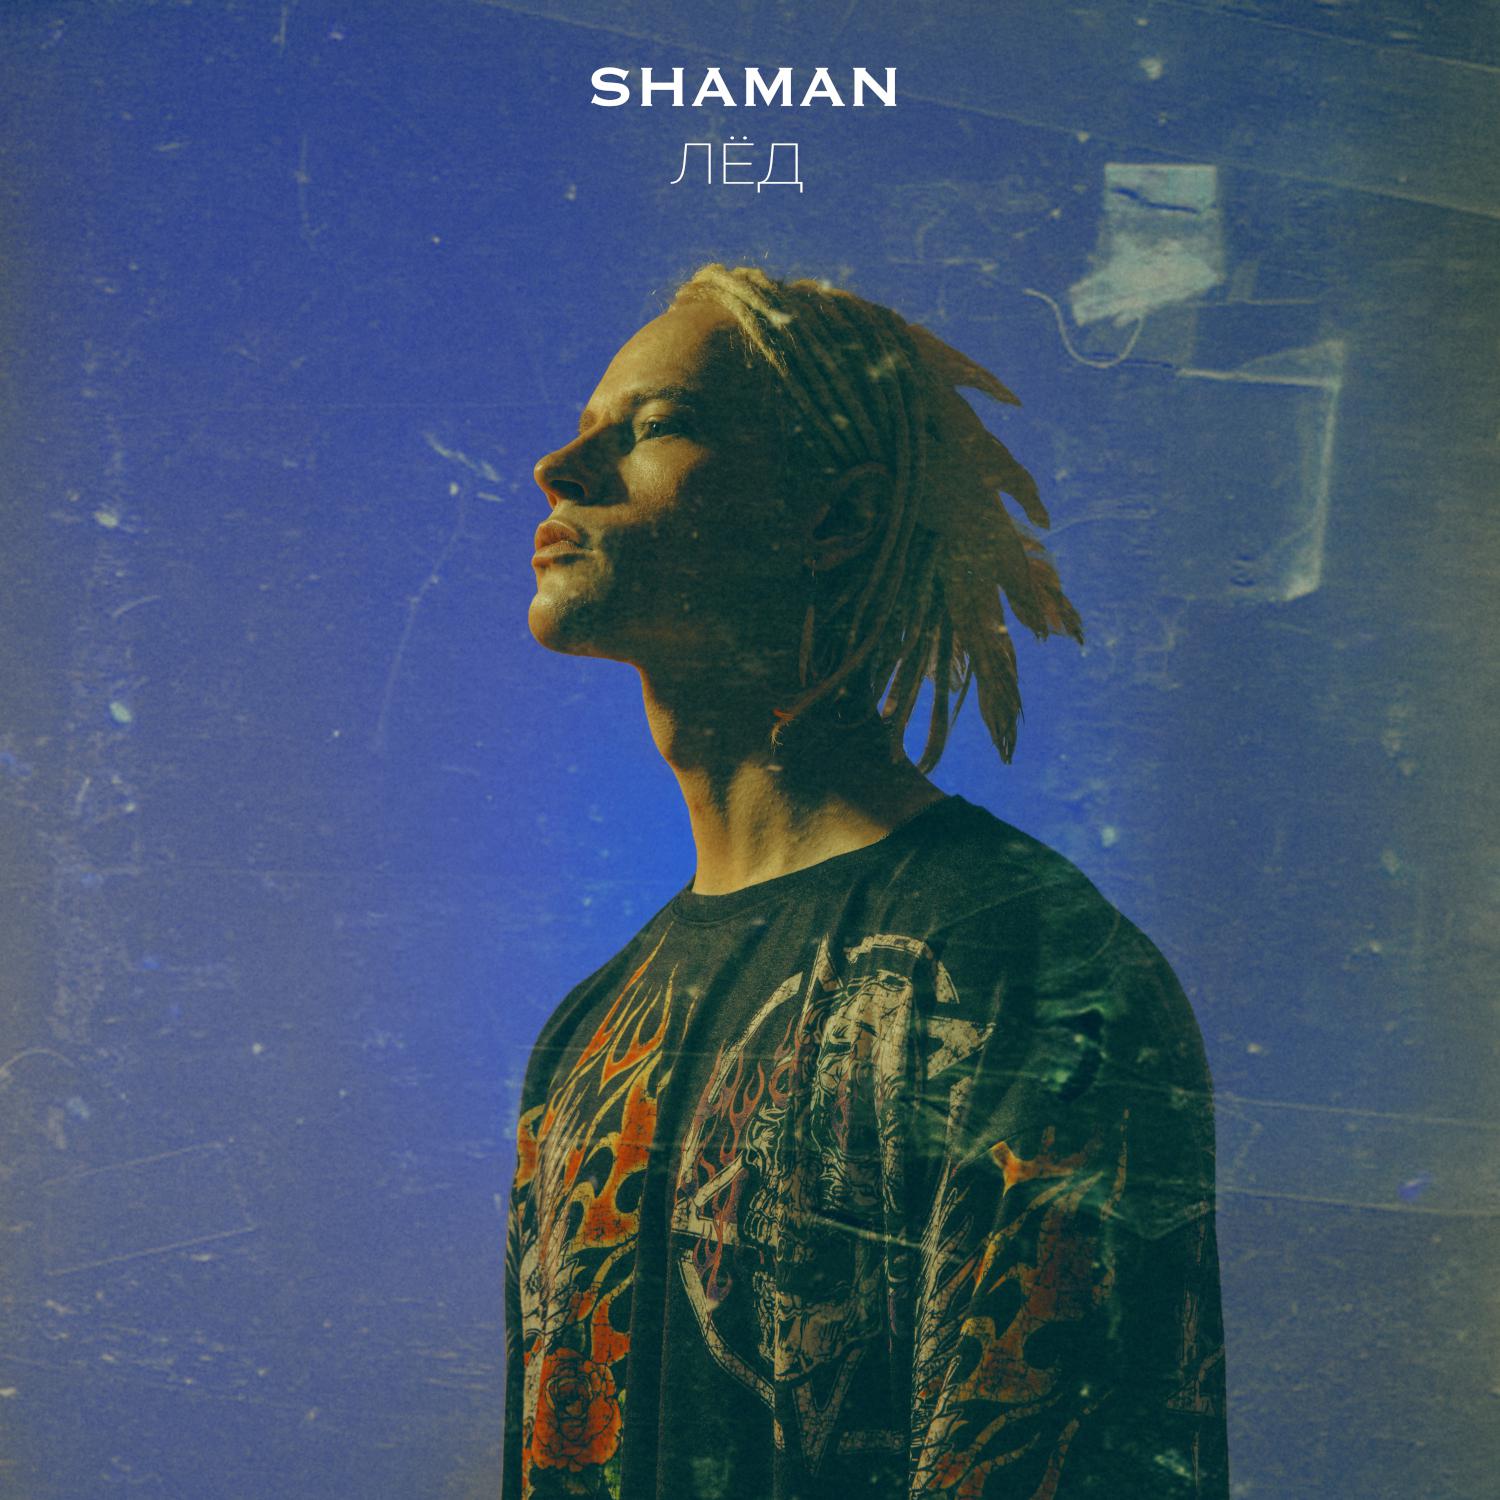 Шаман певец новые песни слушать. Shaman (певец). Shaman певец обложка. Shaman лед.